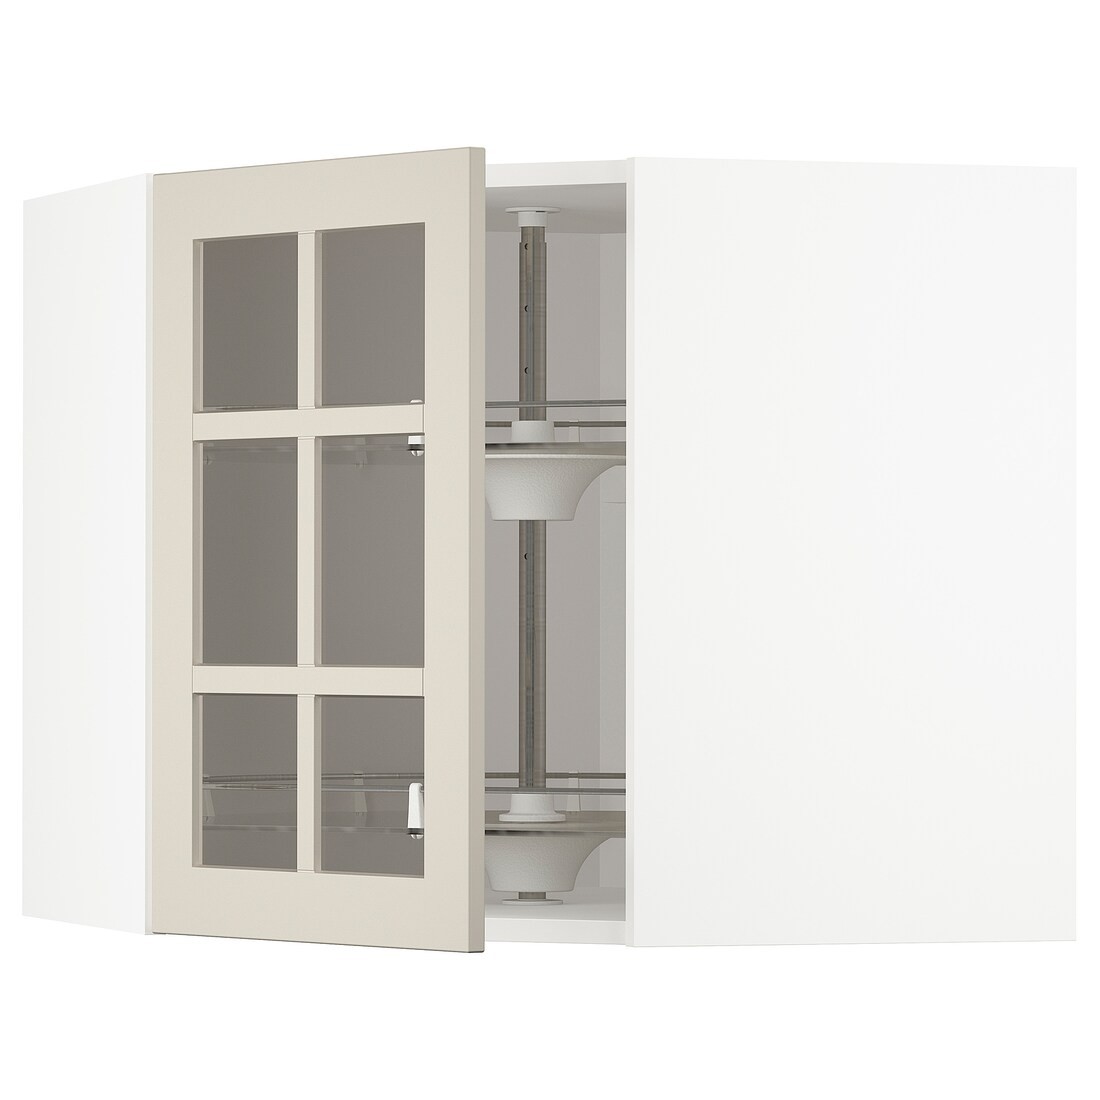 IKEA METOD МЕТОД Угловой настенный шкаф с каруселью / стеклянная дверь, белый / Stensund бежевый, 68x60 см 59407979 594.079.79